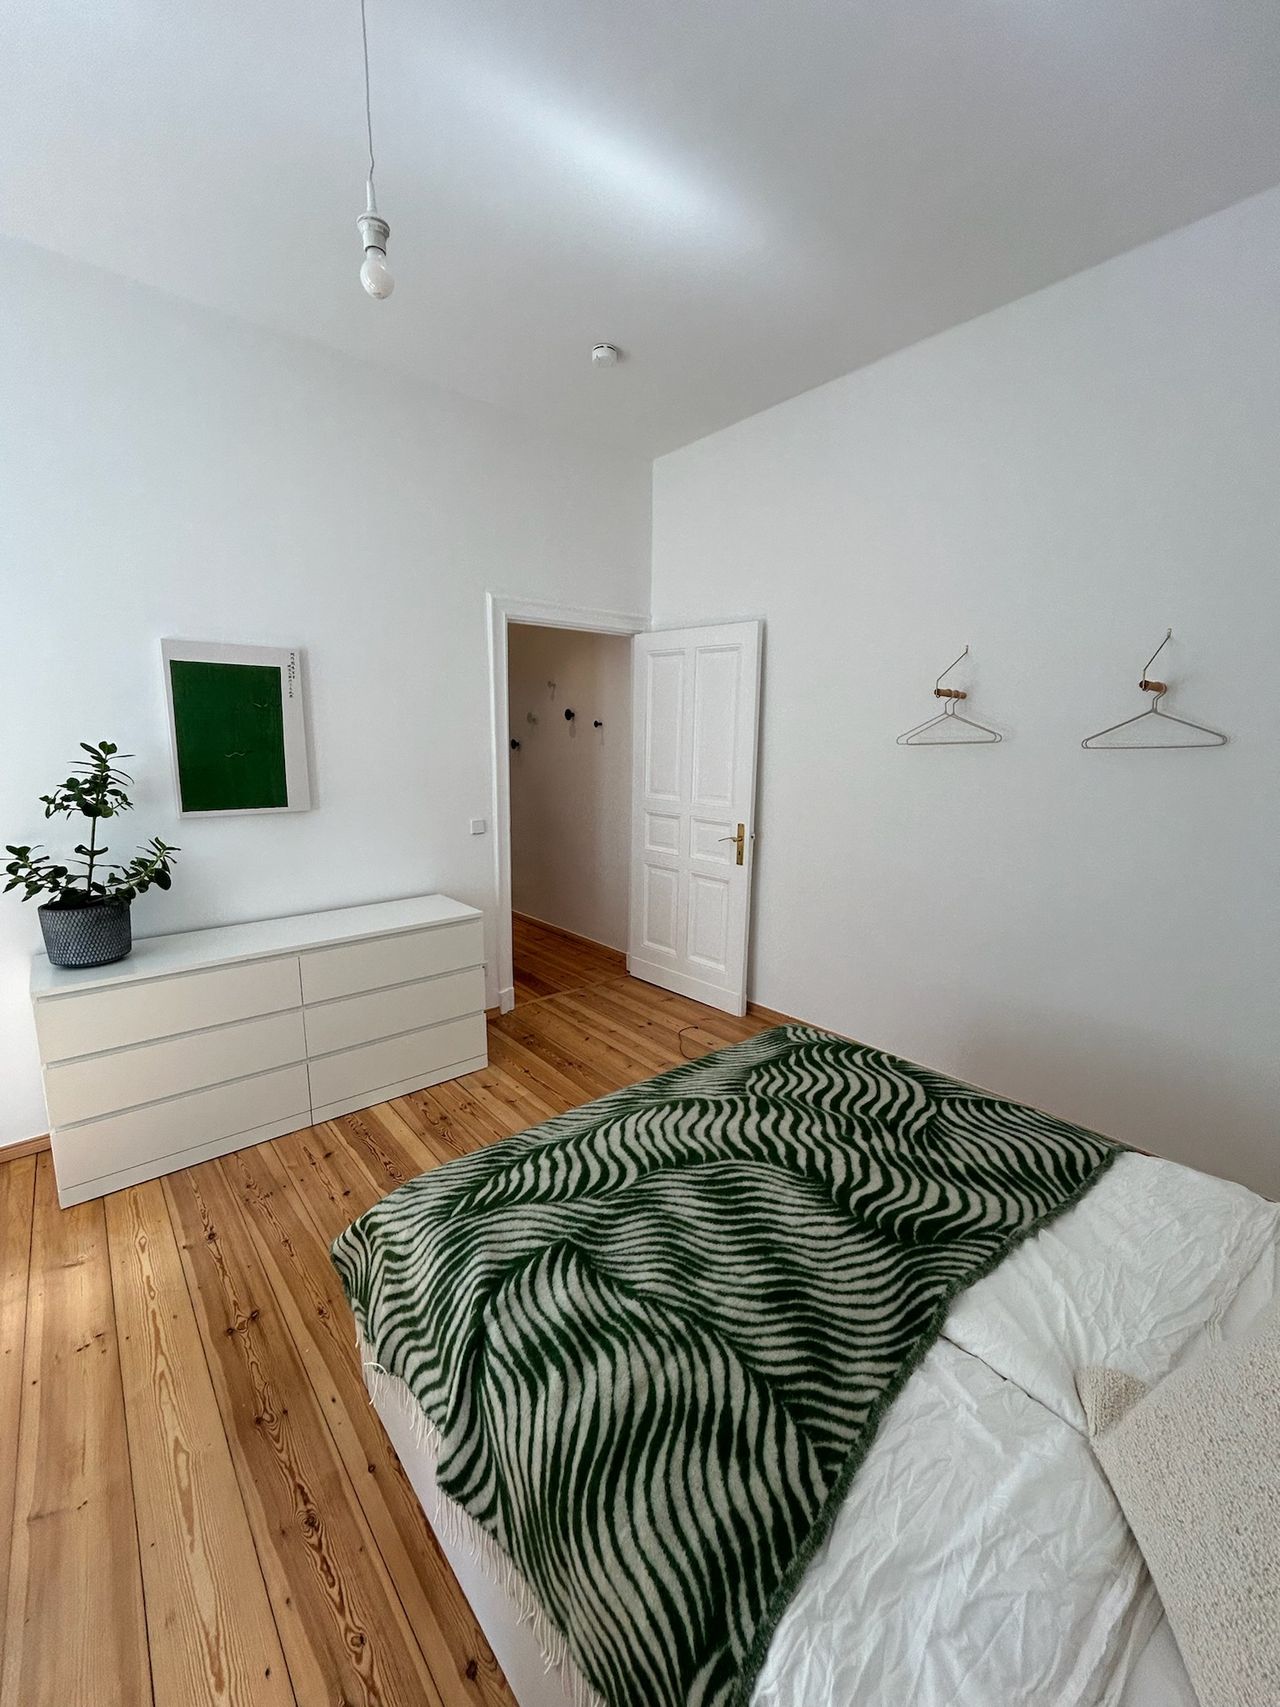 Beautiful 1-room Apartment in Prenzlauer Berg / Wunderschöne 1-Zimmer Wohnung im Prenzlauer Berg